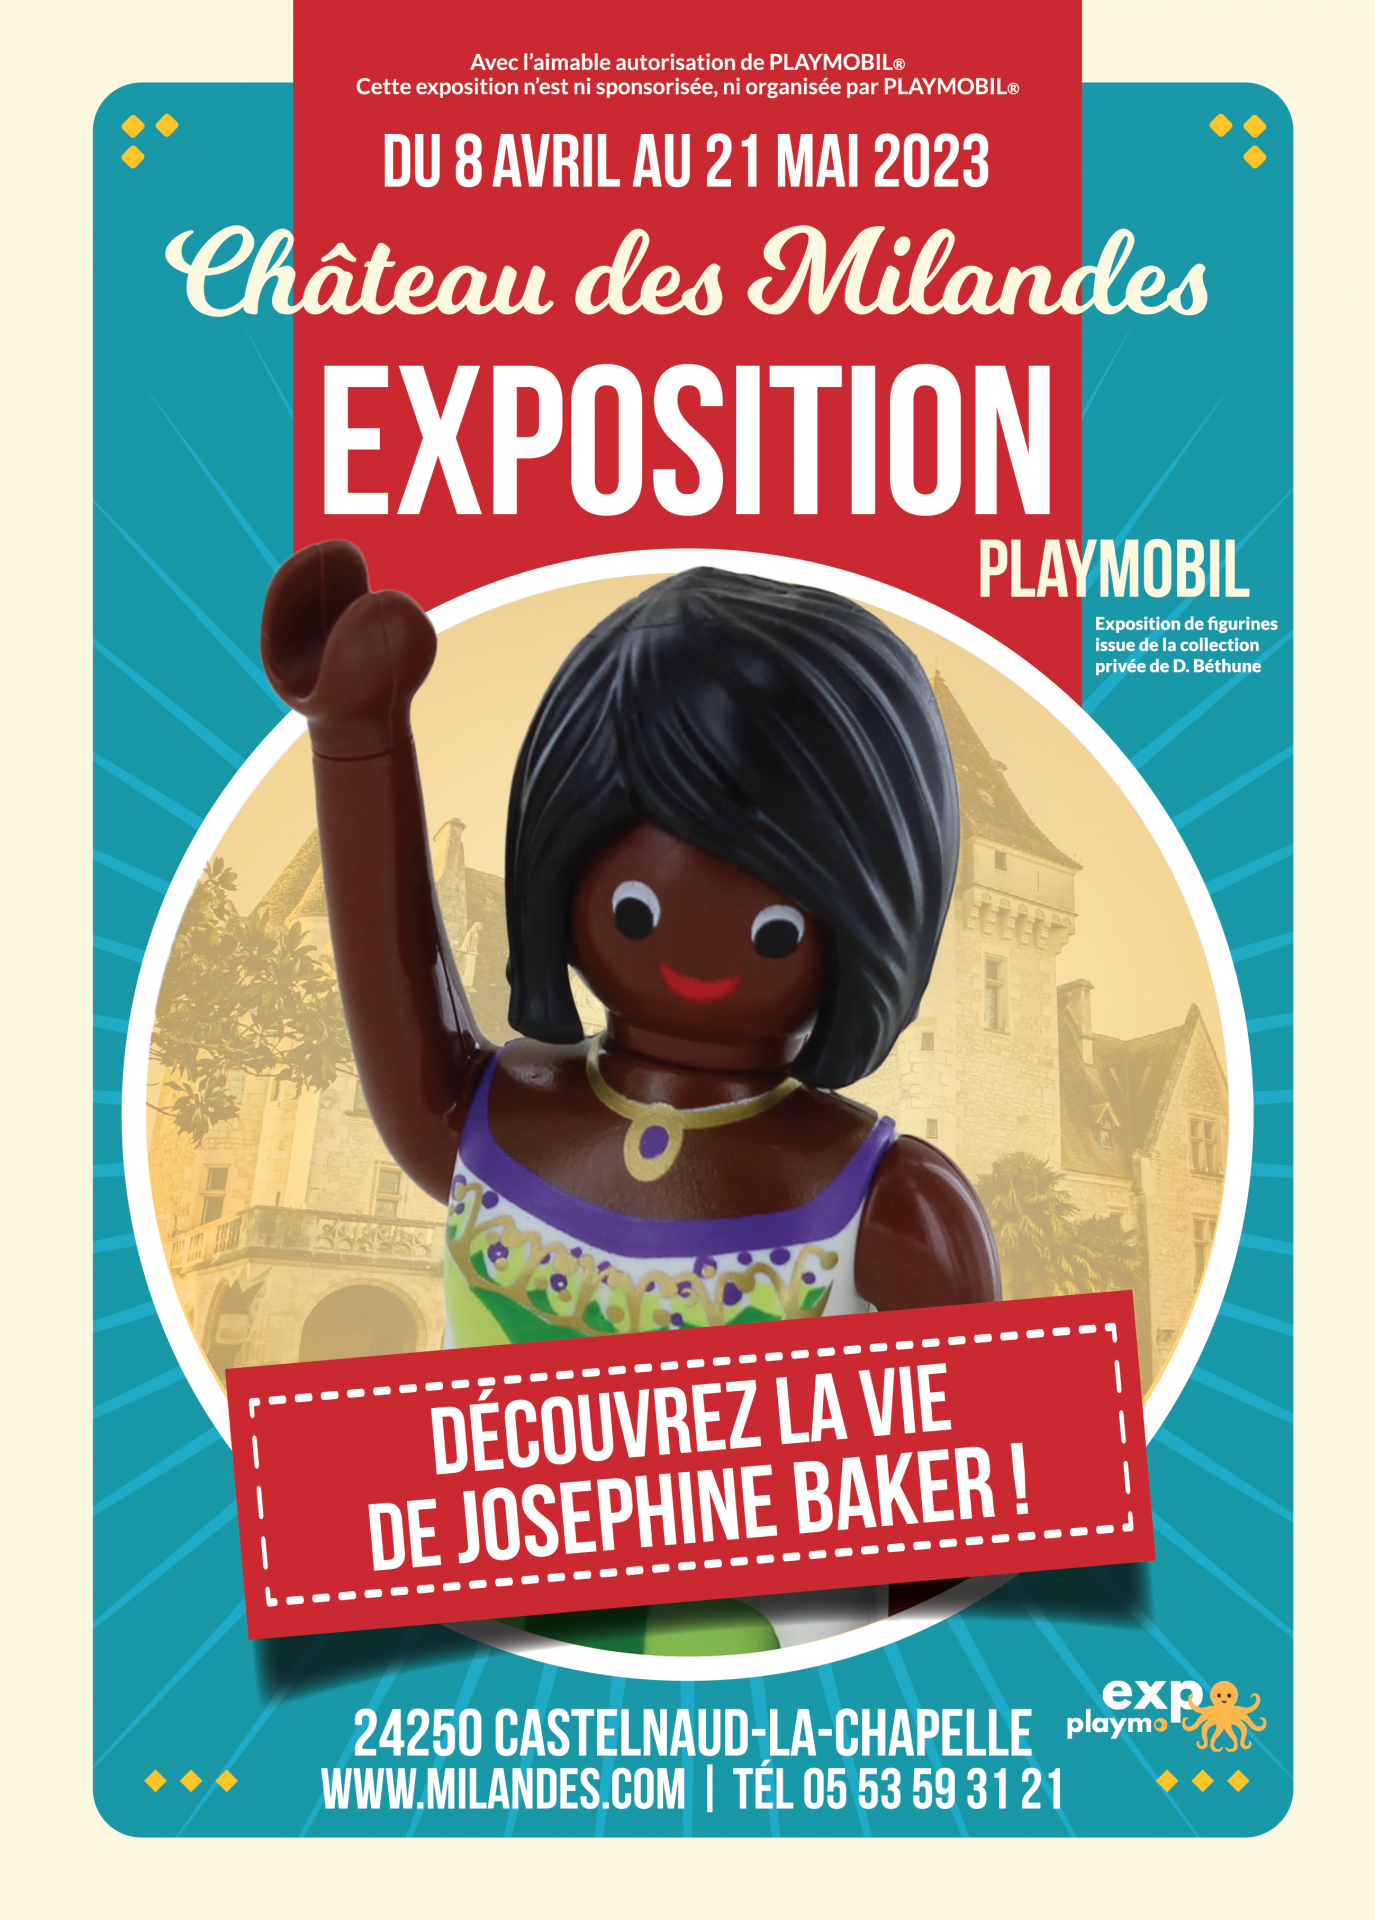 Affiche exposition playmobil chateau des millandes mai 2023 dominique bethune